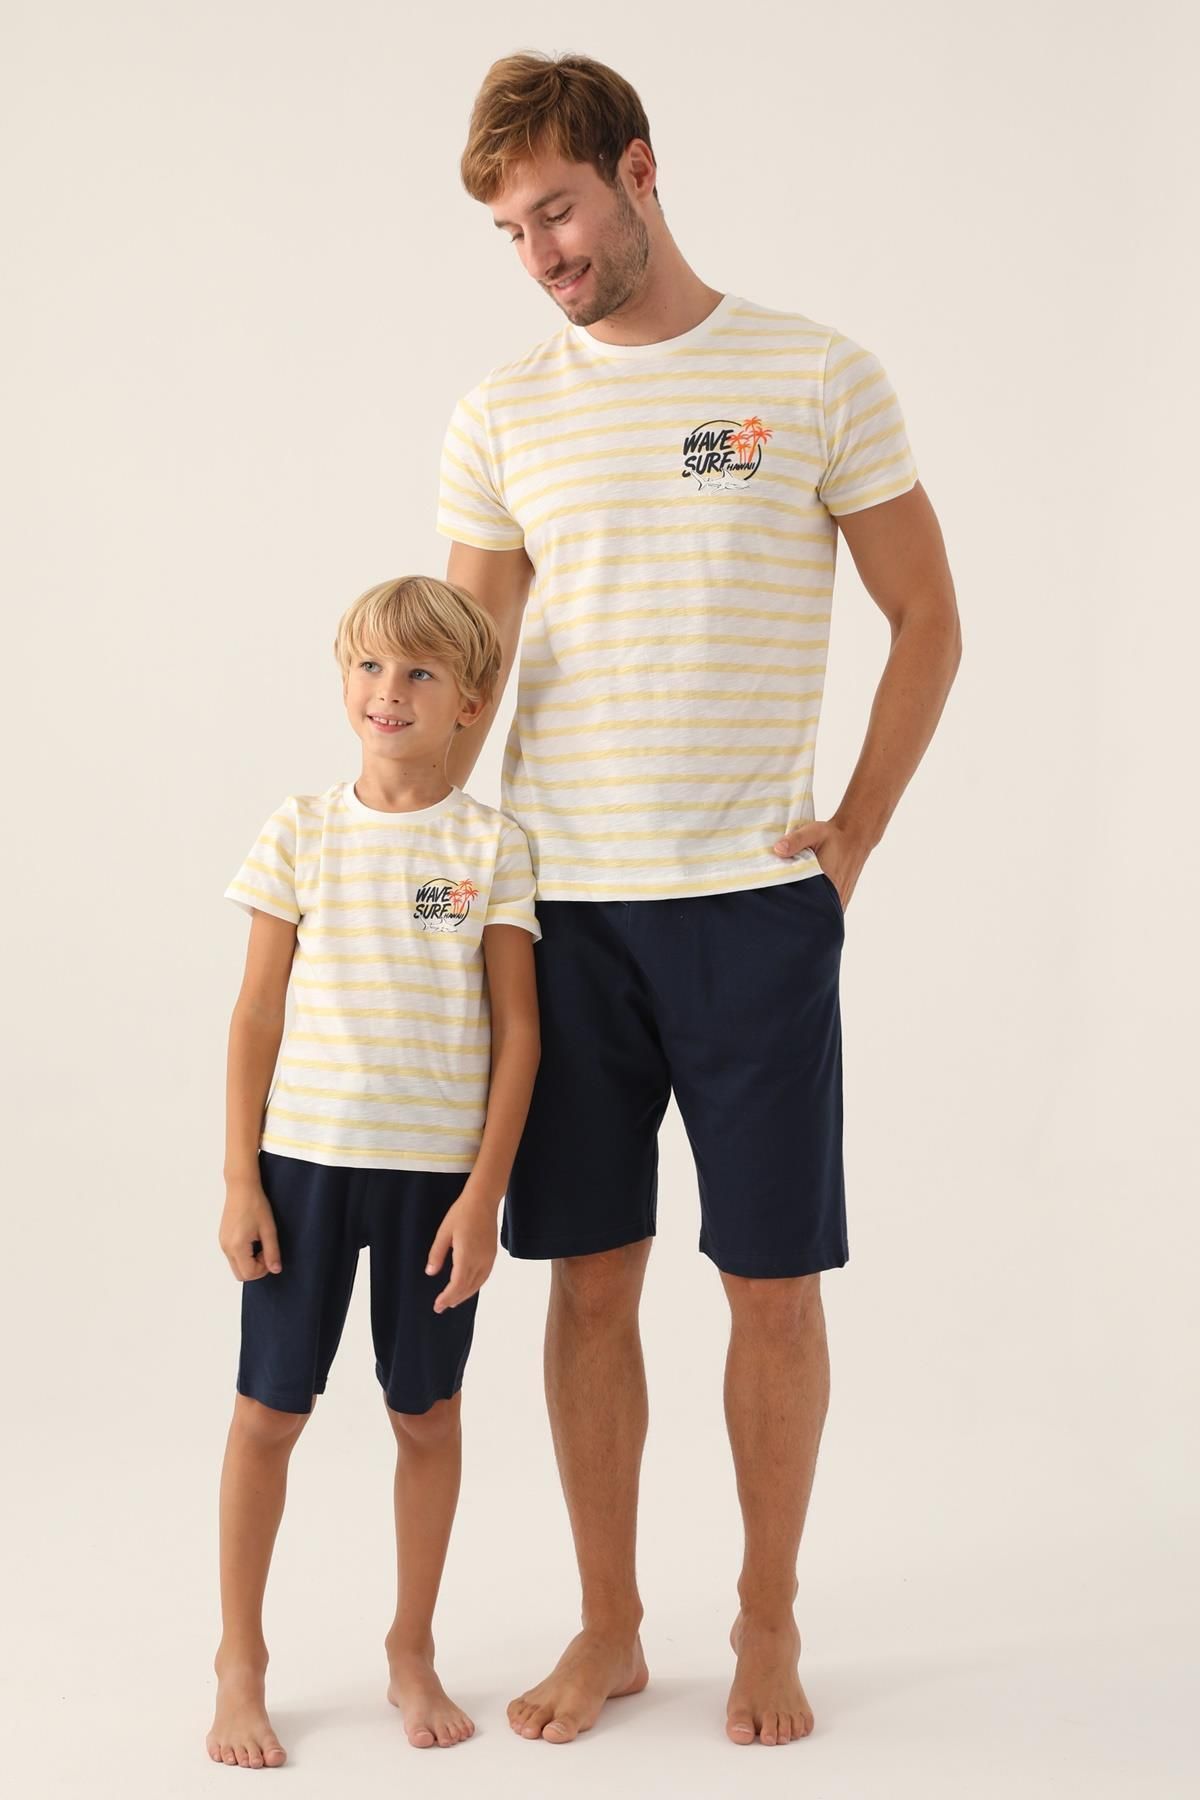 Rolypoly Baba Oğul T-shirt Şort Takım (bedenler ayrı ayrı fiyatlandırılır)